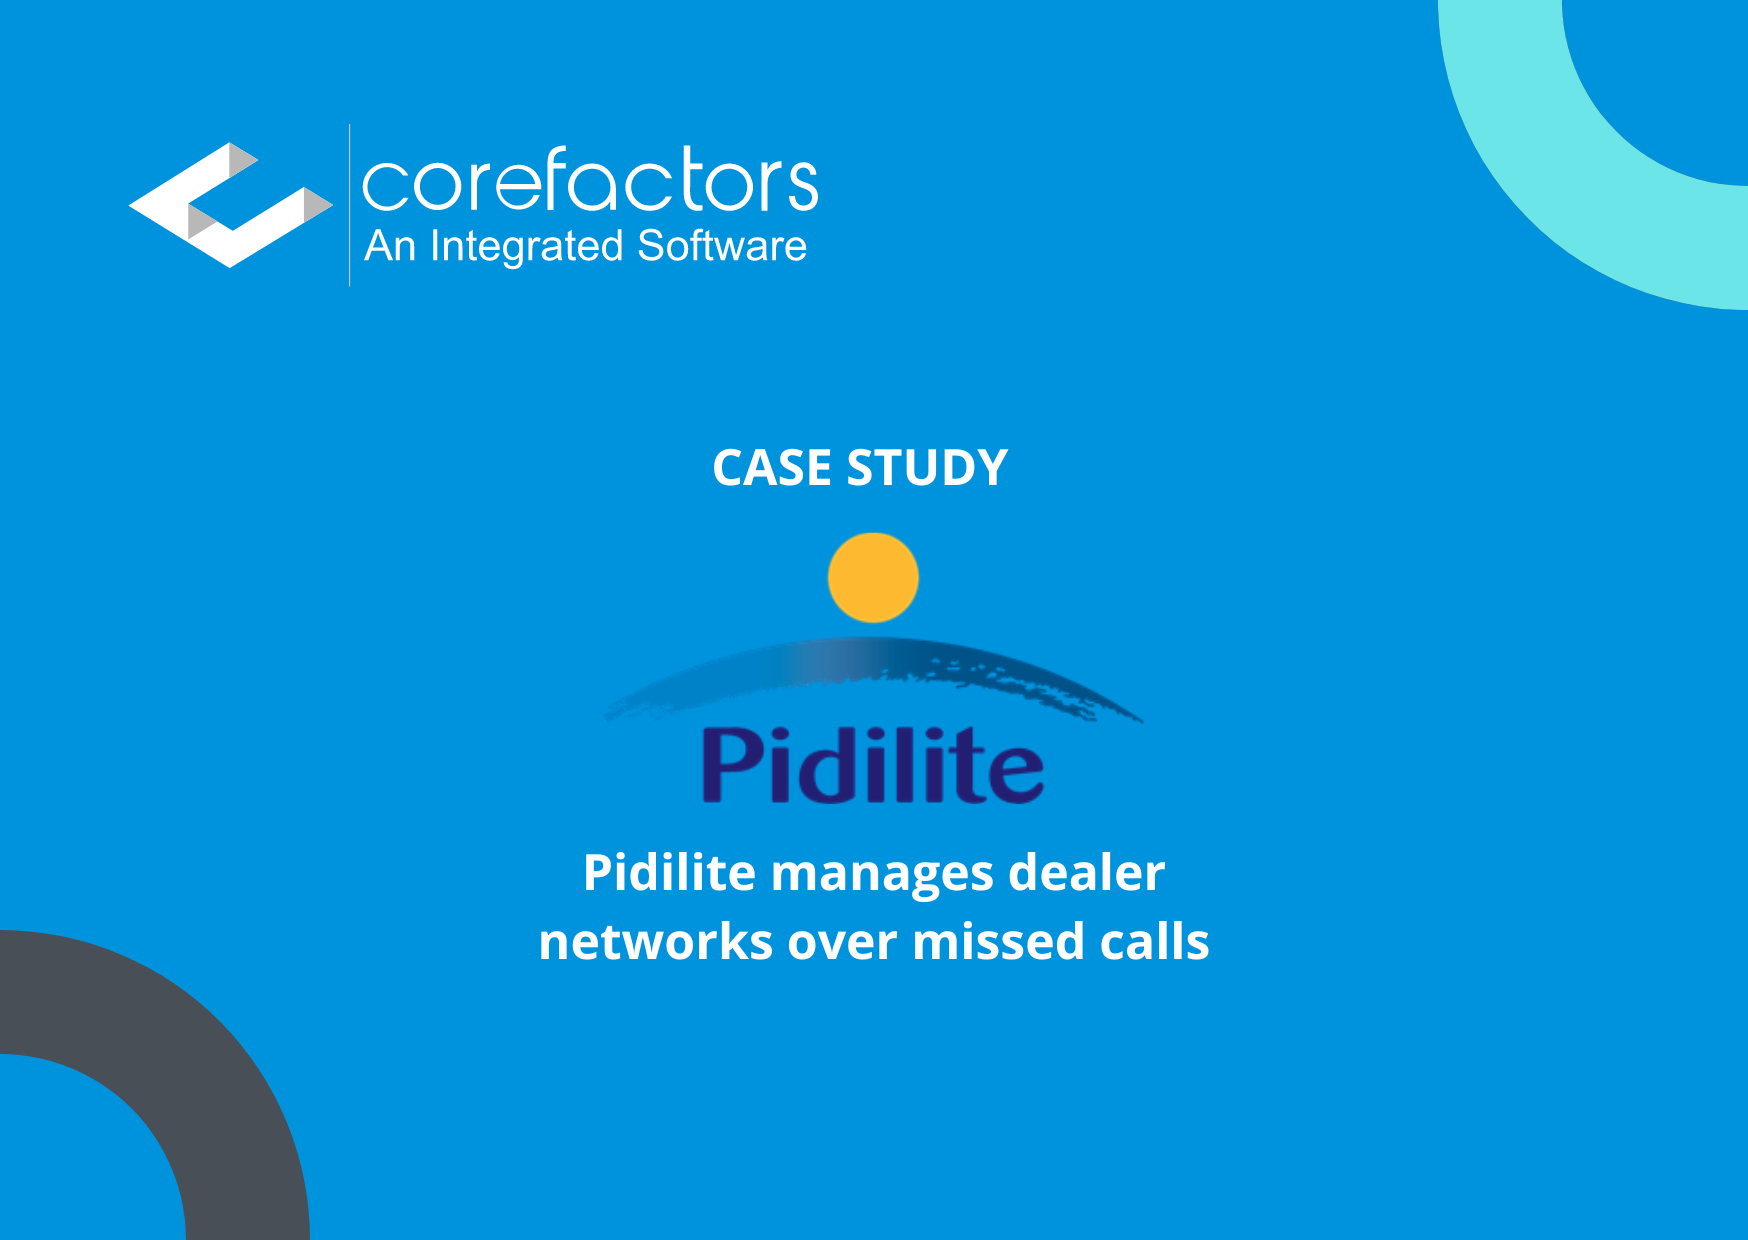 Pidilite manages dealer networks over missed calls